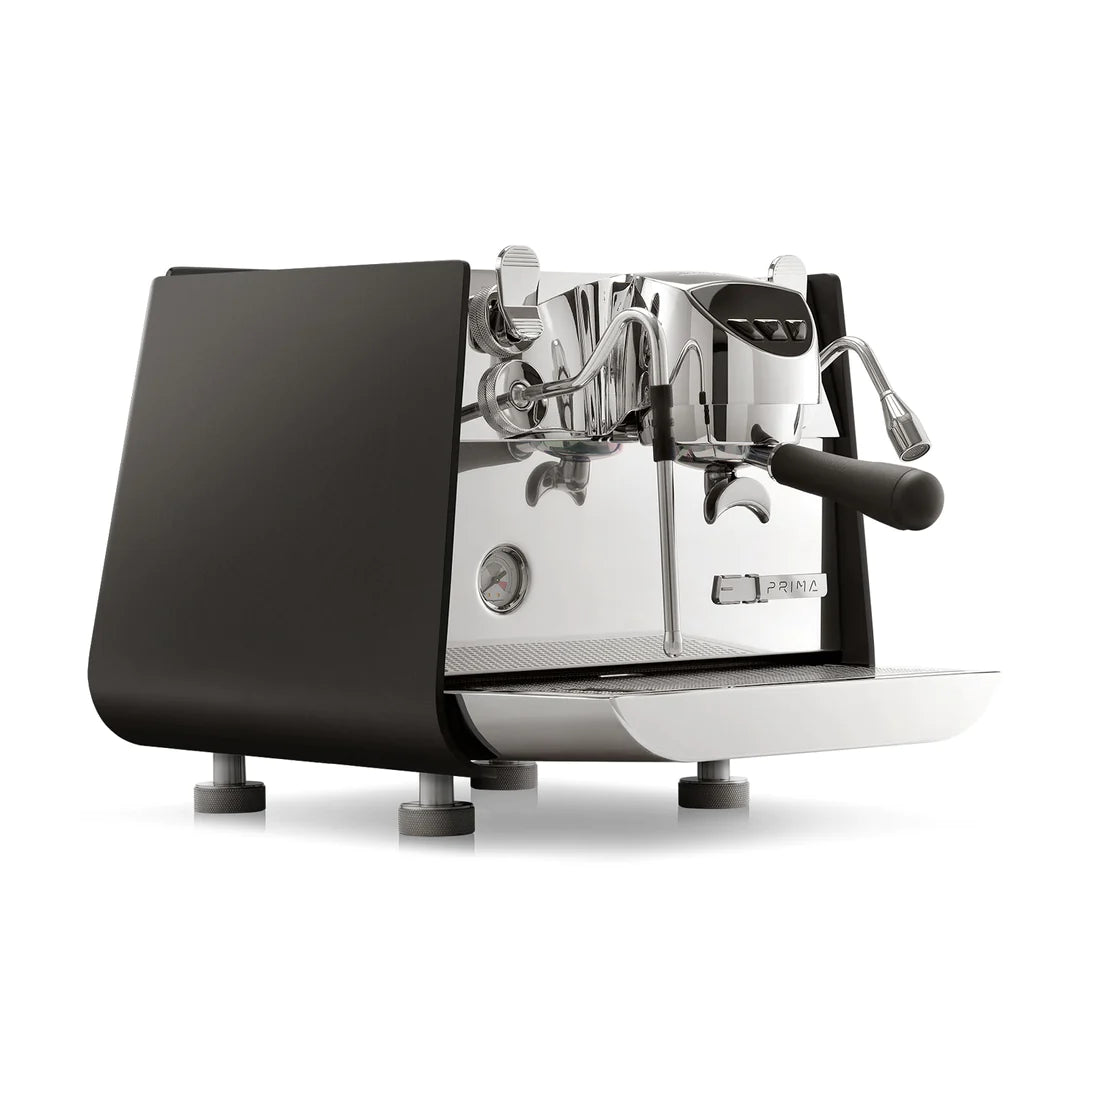 Home/Prosumer Espresso Machines - The Noble Barista